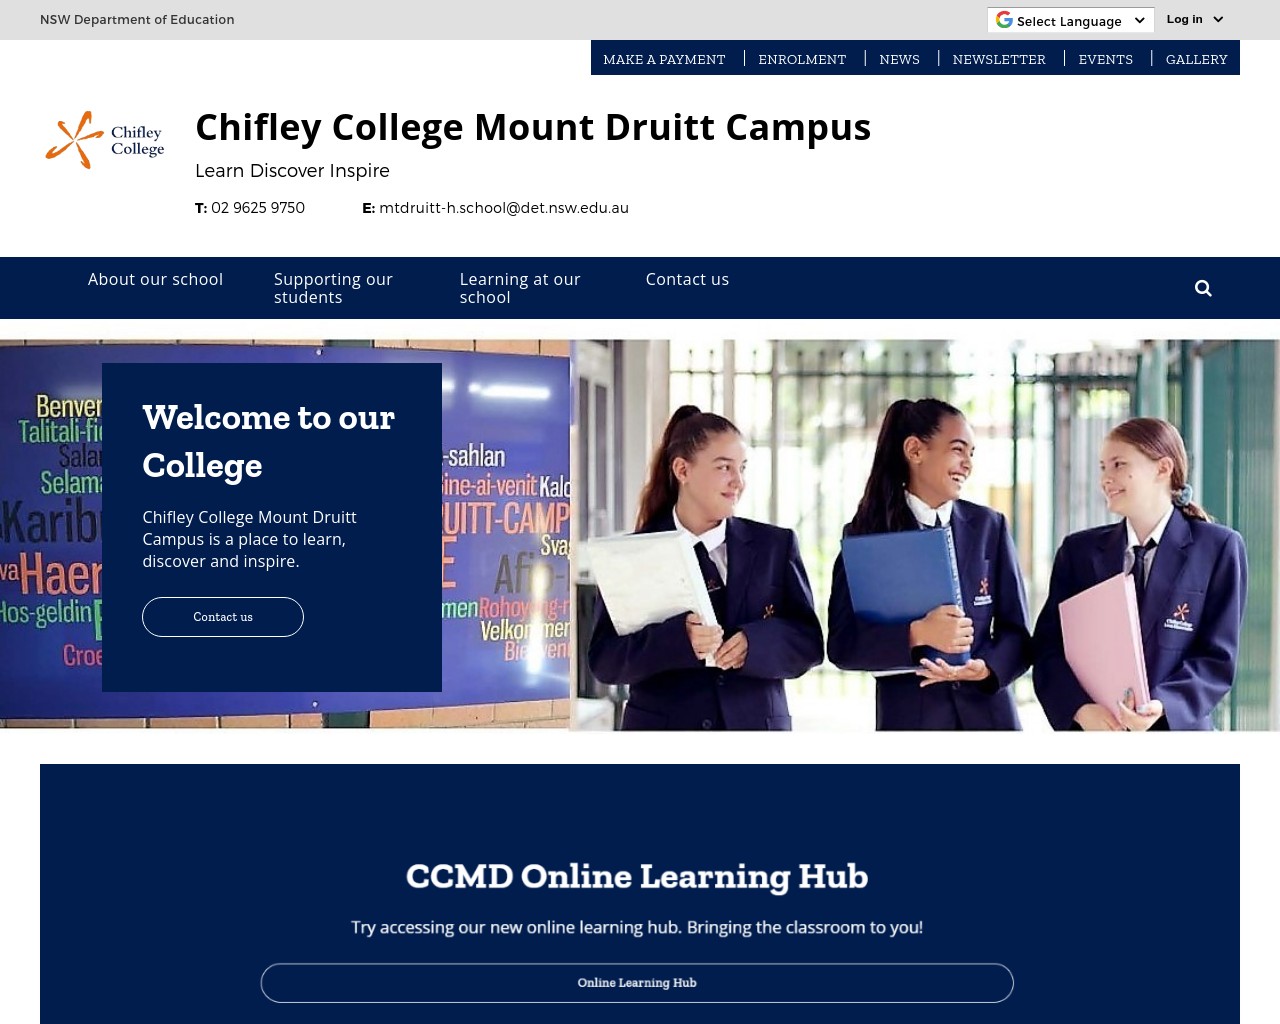 Chifley College Mount Druitt Campus